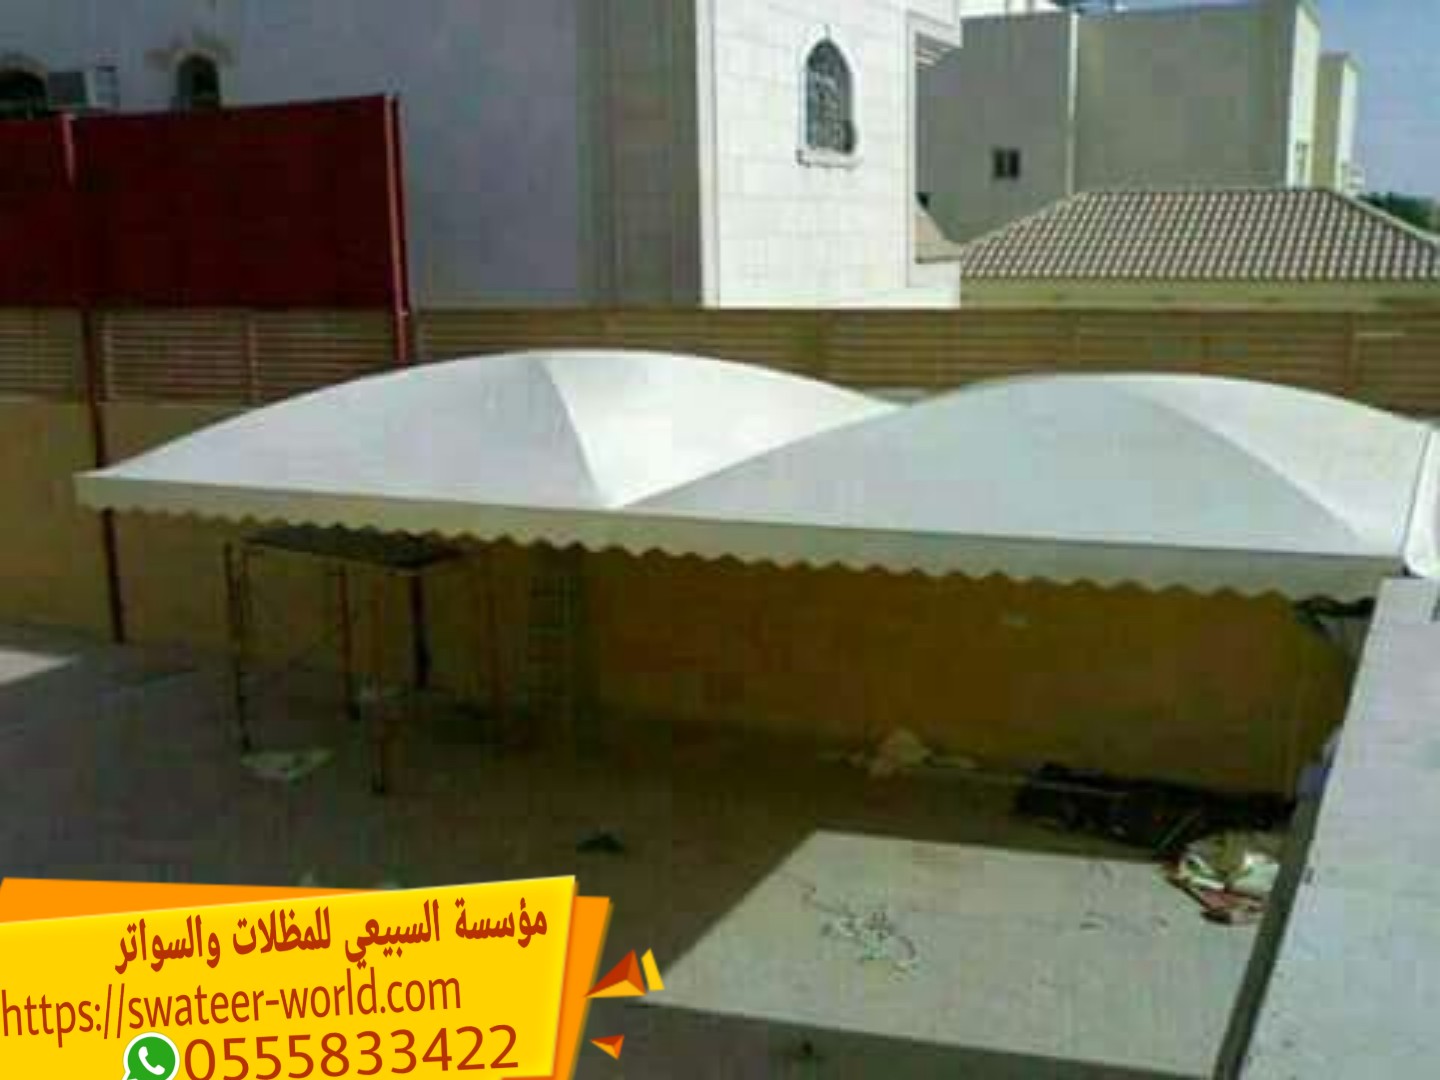 مظلات سيارات في الرياض , 0555833422 , شركة مظلات بالرياض , مظلات وسواتر الرياض بجودة عالية ,  P_1609gte5y6